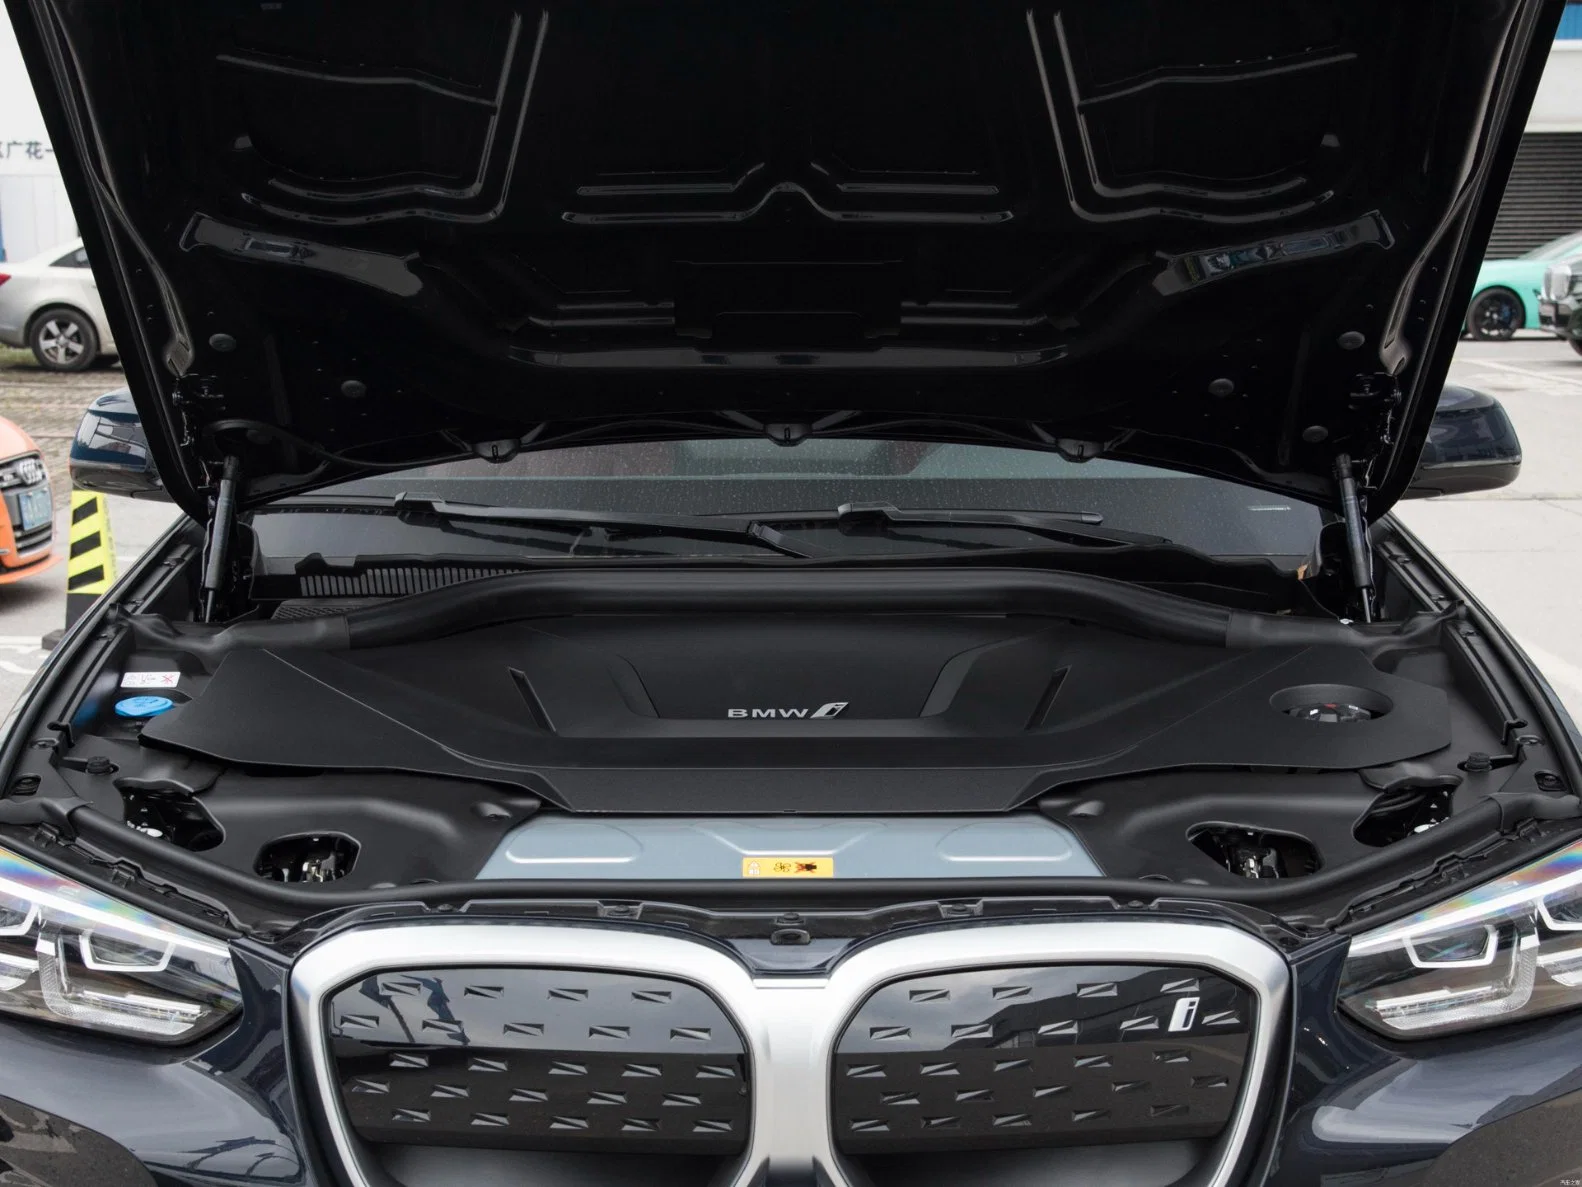 BMW IX3 de segunda mano puro eléctrico de lujo SUV coche eléctrico